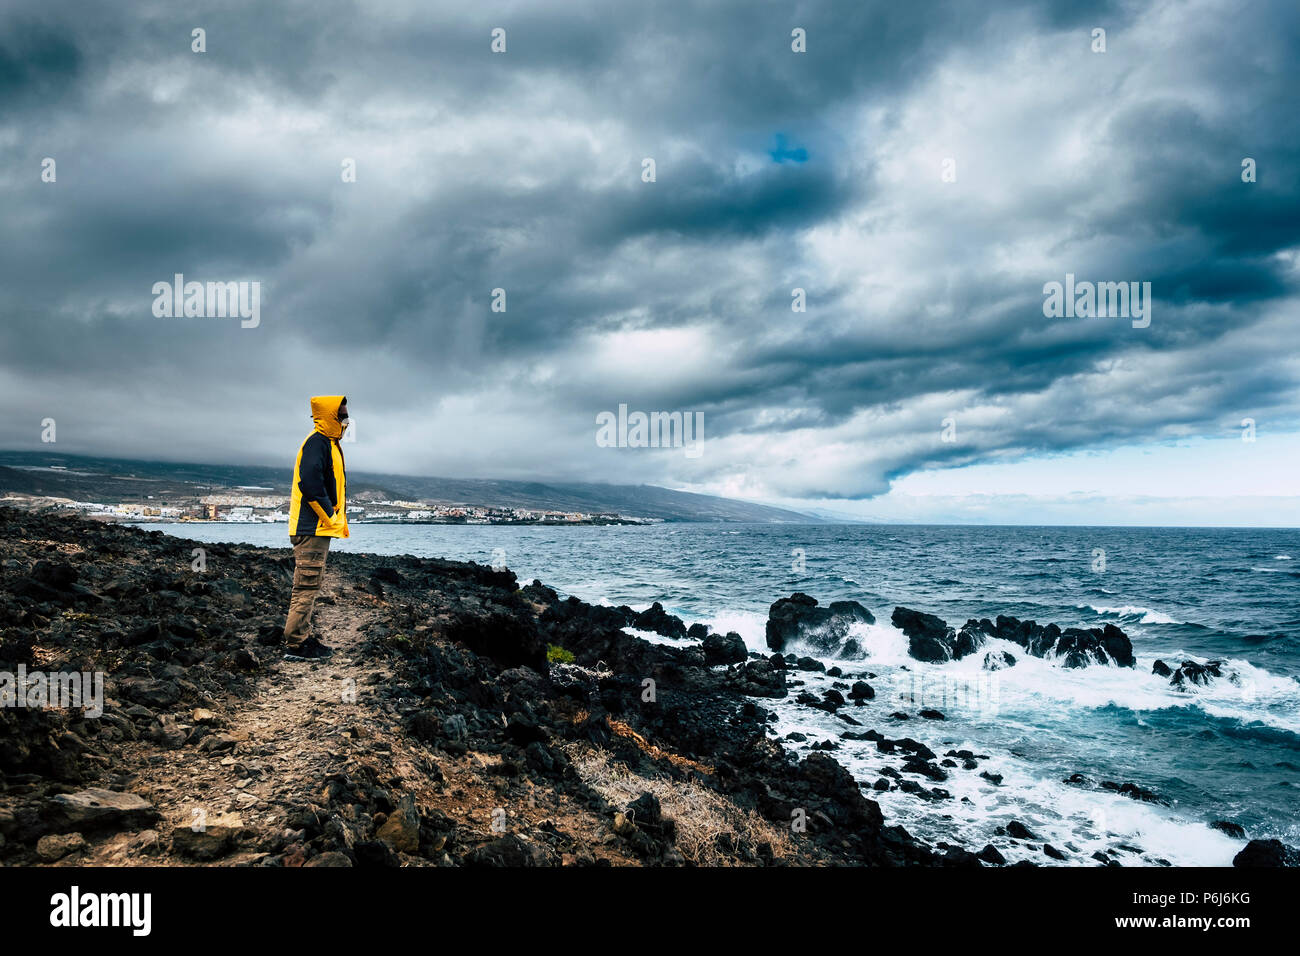 Uomo con giacca gialla in un luogo selvaggio sulla costa dell'oceano guardando la potenza delle onde in un cattivo tempo. sfida e godersi il viaggio lifestyle Foto Stock